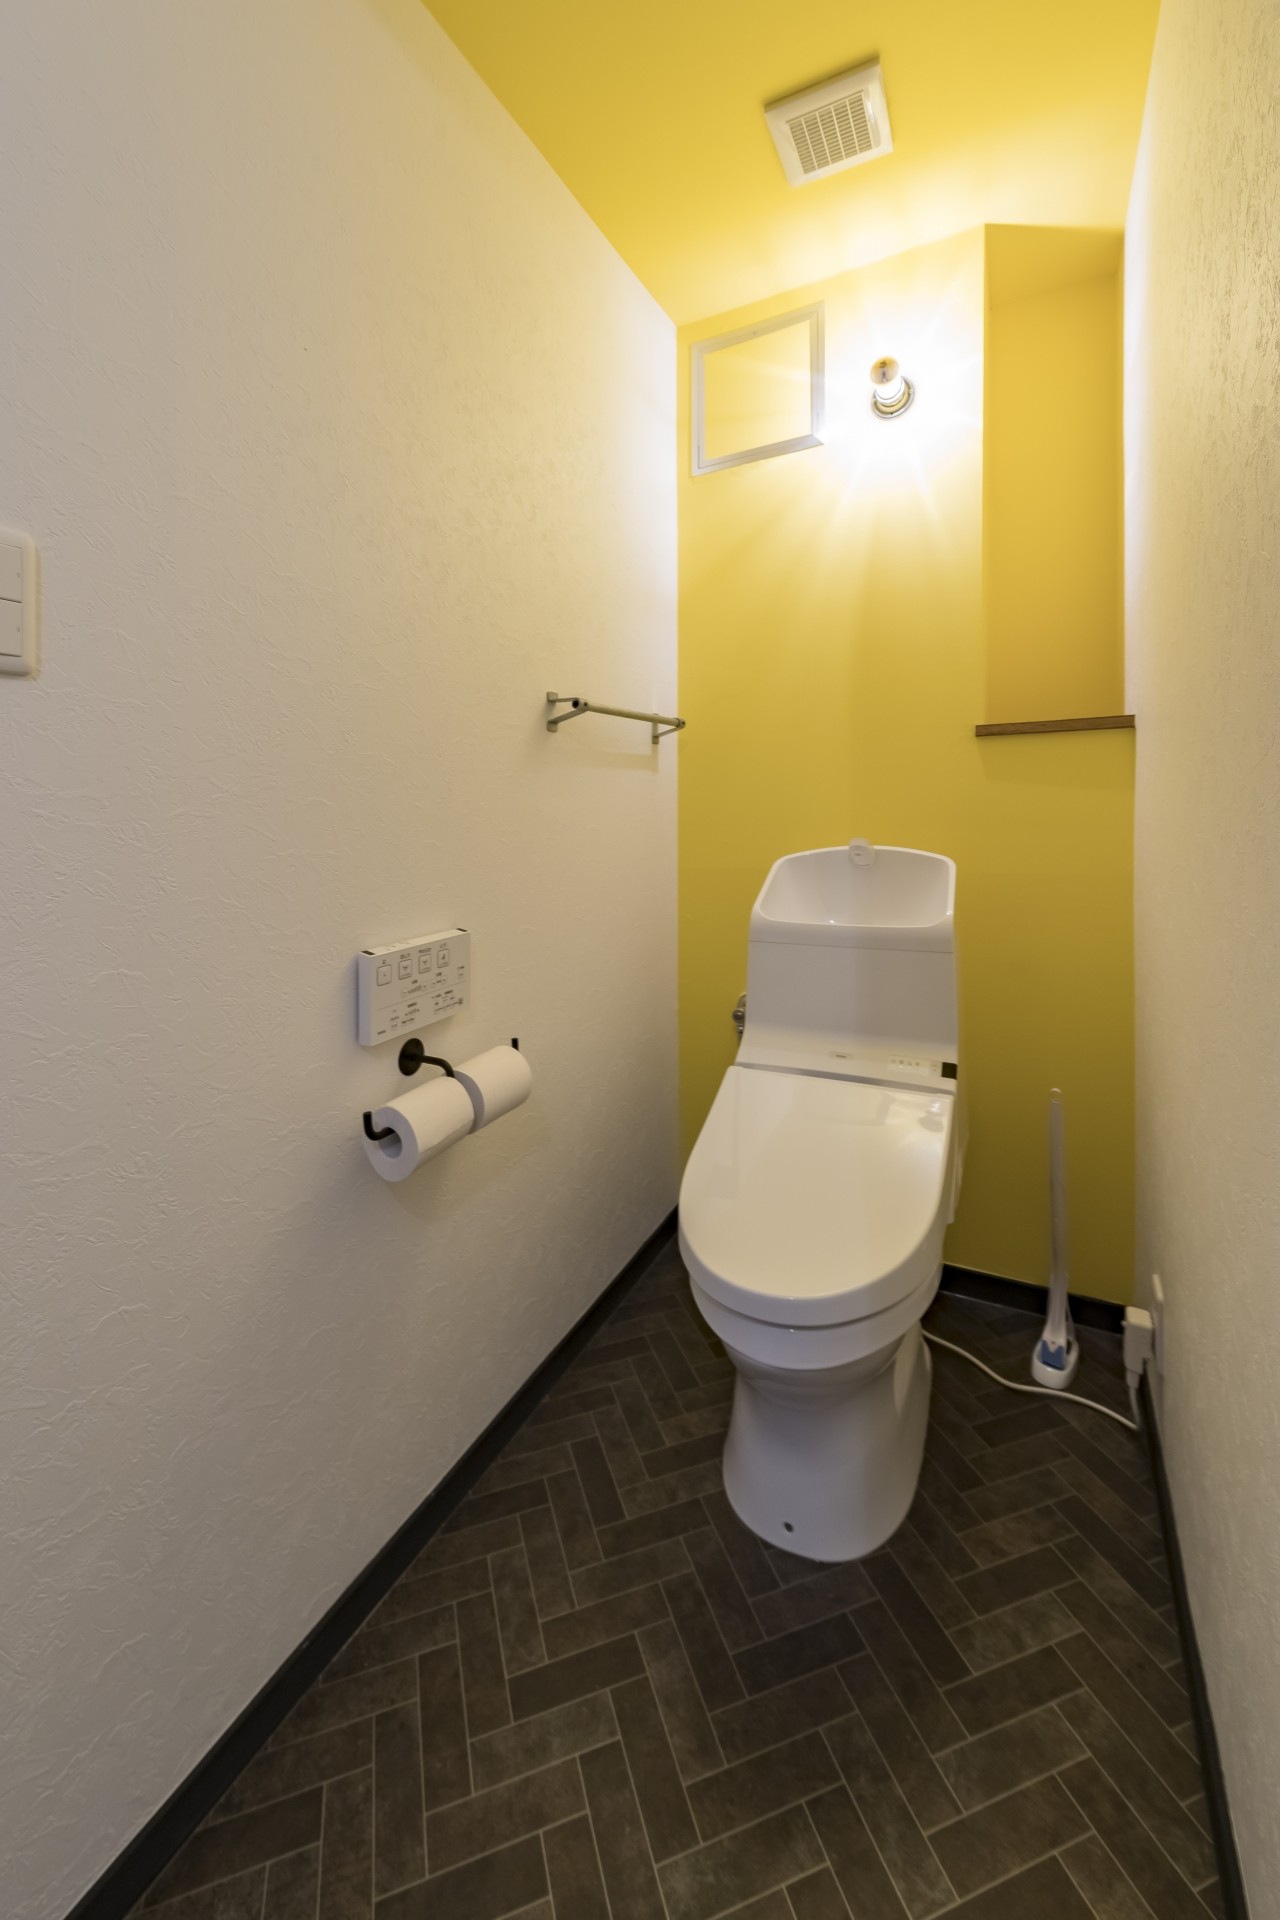 まねしたくなる黄色いクロスのトイレ(広々とした明るい土間が魅力。落ち着き感のあるインダストリアルな住まい) バス